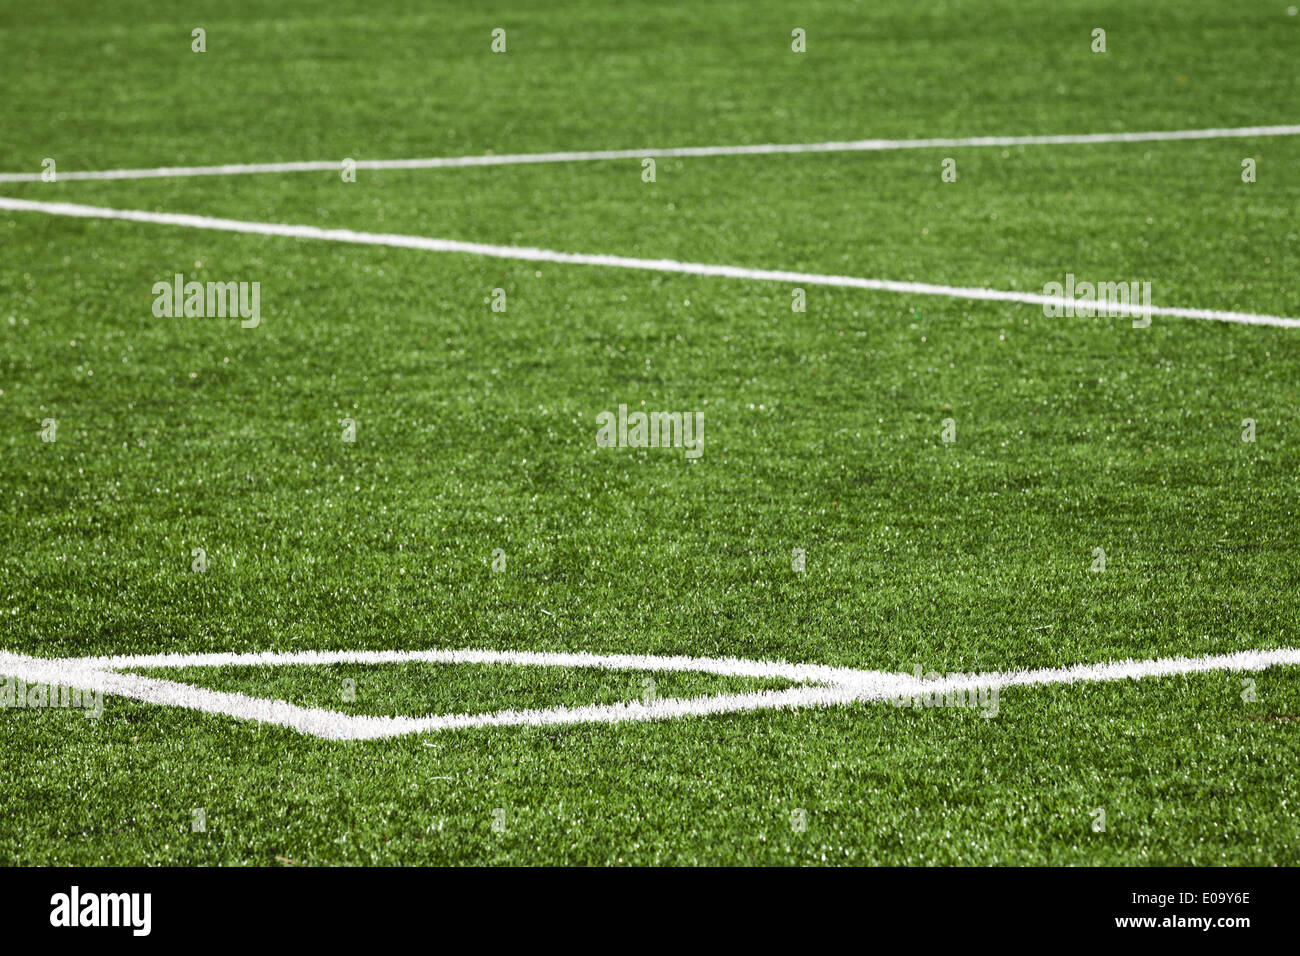 Fußball-Spielfeld-Hintergrund mit weißer Markierung auf dem grünen Rasen Stockfoto